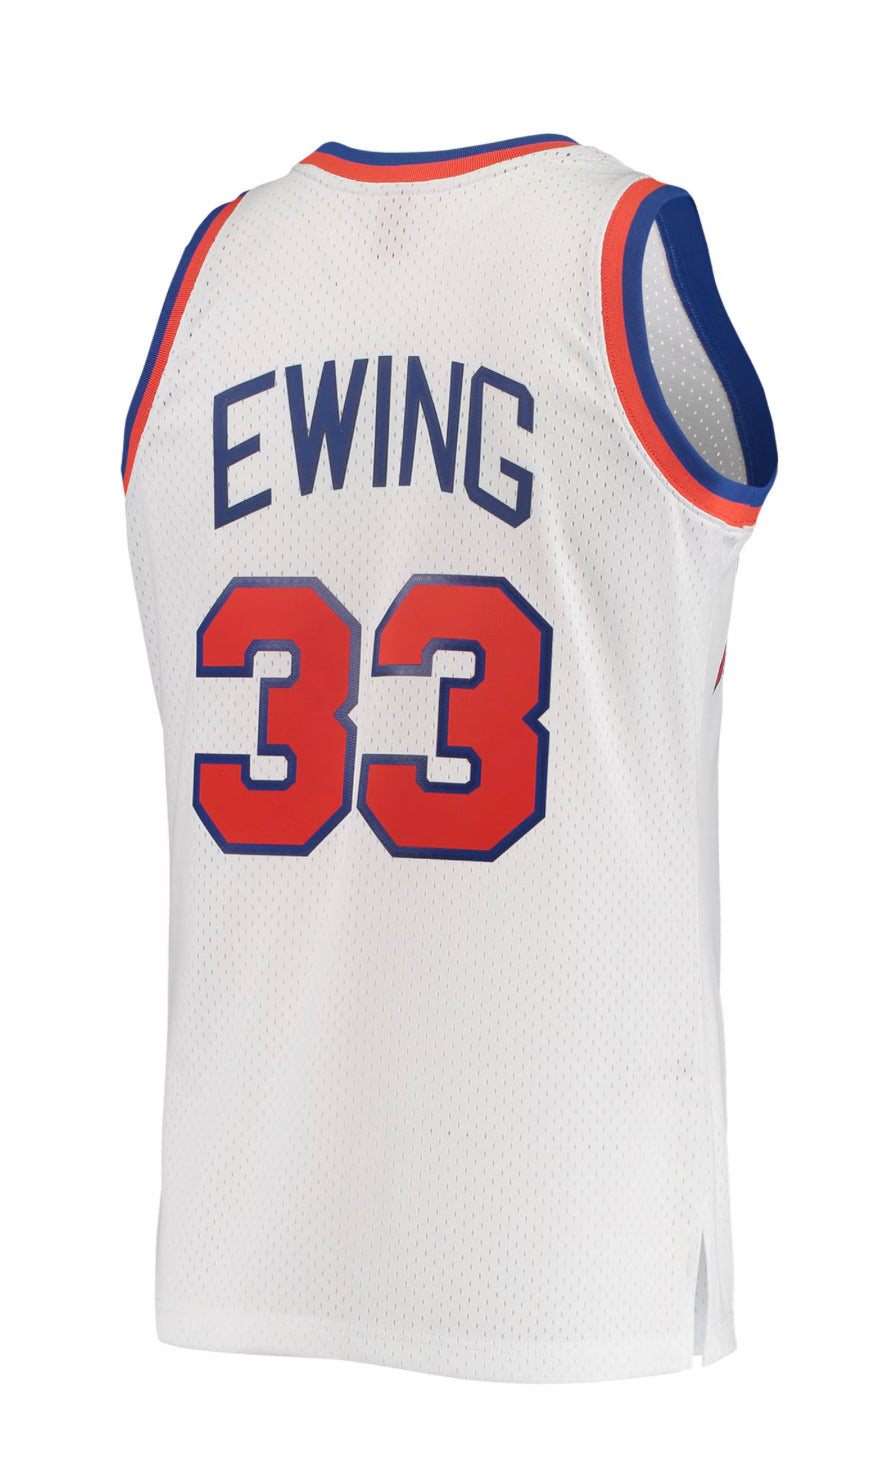 New York Knicks 1985-86 Patrick Ewing Mitchell and Ness Swingman Jersey